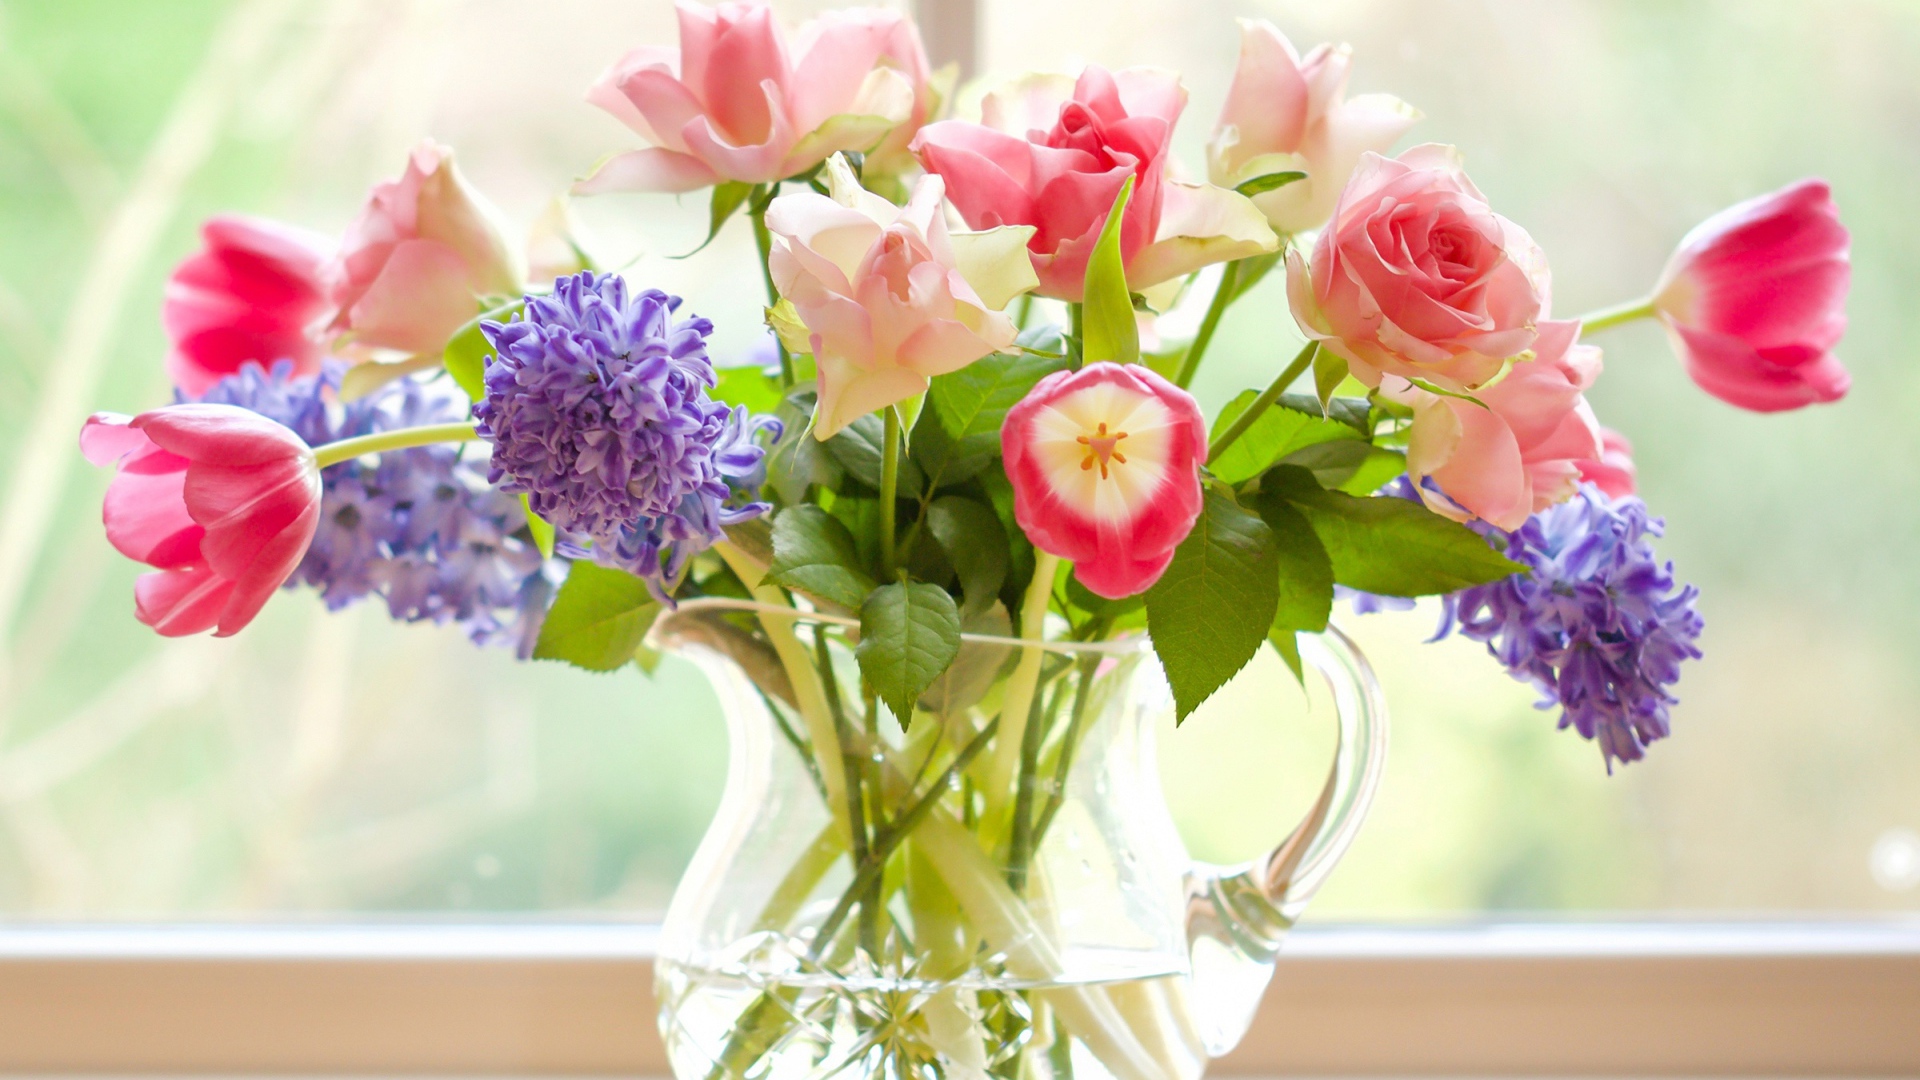 Букет роз, тюльпанов и гиацинтов в стеклянной вазе у окна